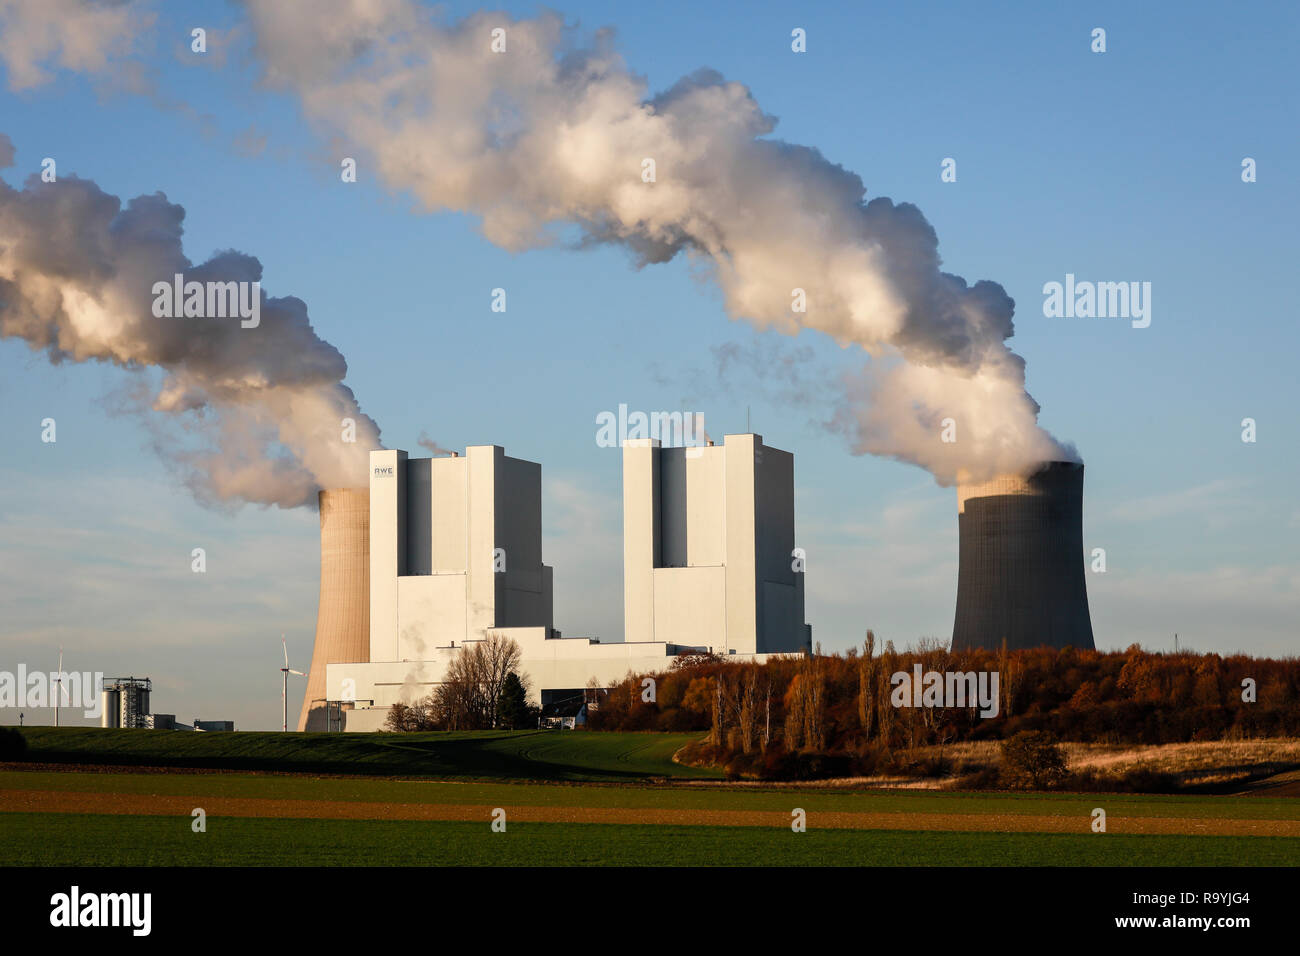 18.11.2018, Grevenbroich, Nordrhein-Westfalen, Deutschland - RWE Power AG Kraftwerk Neurath, Braunkohlekraftwerk am RWE Braunkohletagebau Garzweiler,  Stock Photo